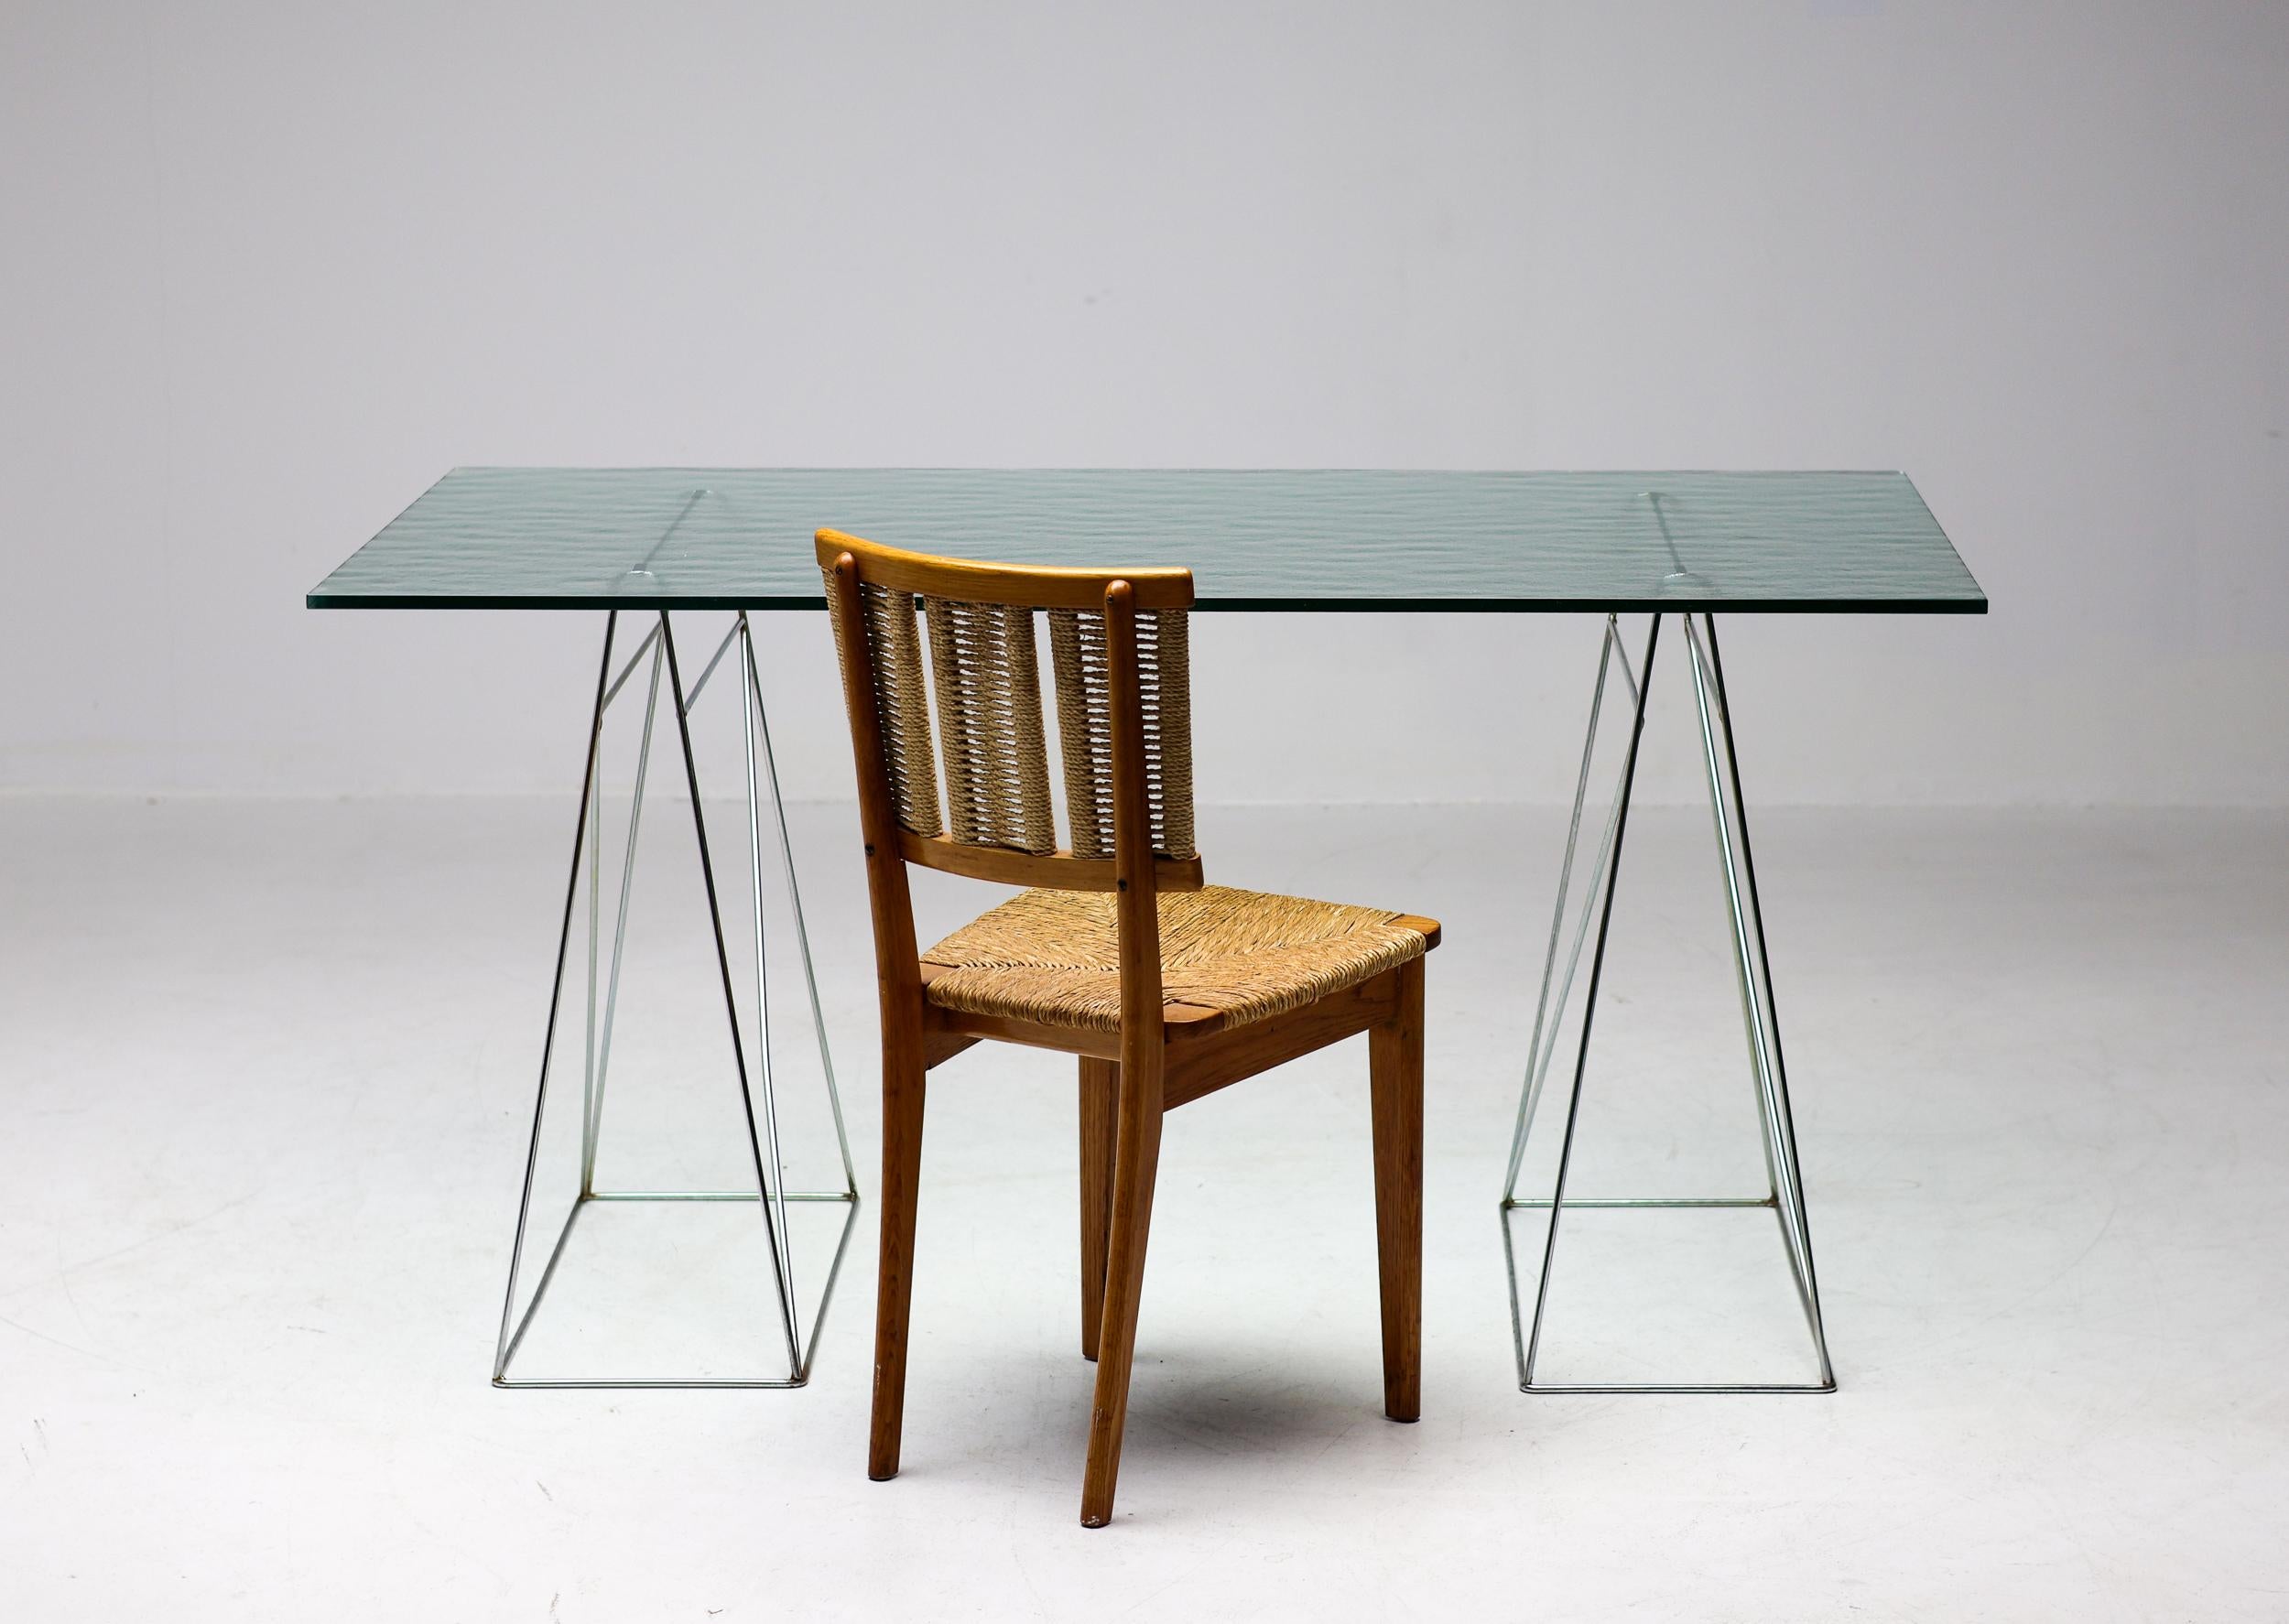 Anmutiger, kompakter Schreibtisch, entworfen vom französischen Designer Olivier Mourgue.
Einzigartiges Exemplar mit einer verkürzten, strukturierten Kristallplatte, die von Cassina für den Tisch LC6 von Le Corbusier hergestellt wurde.
Ein ideales